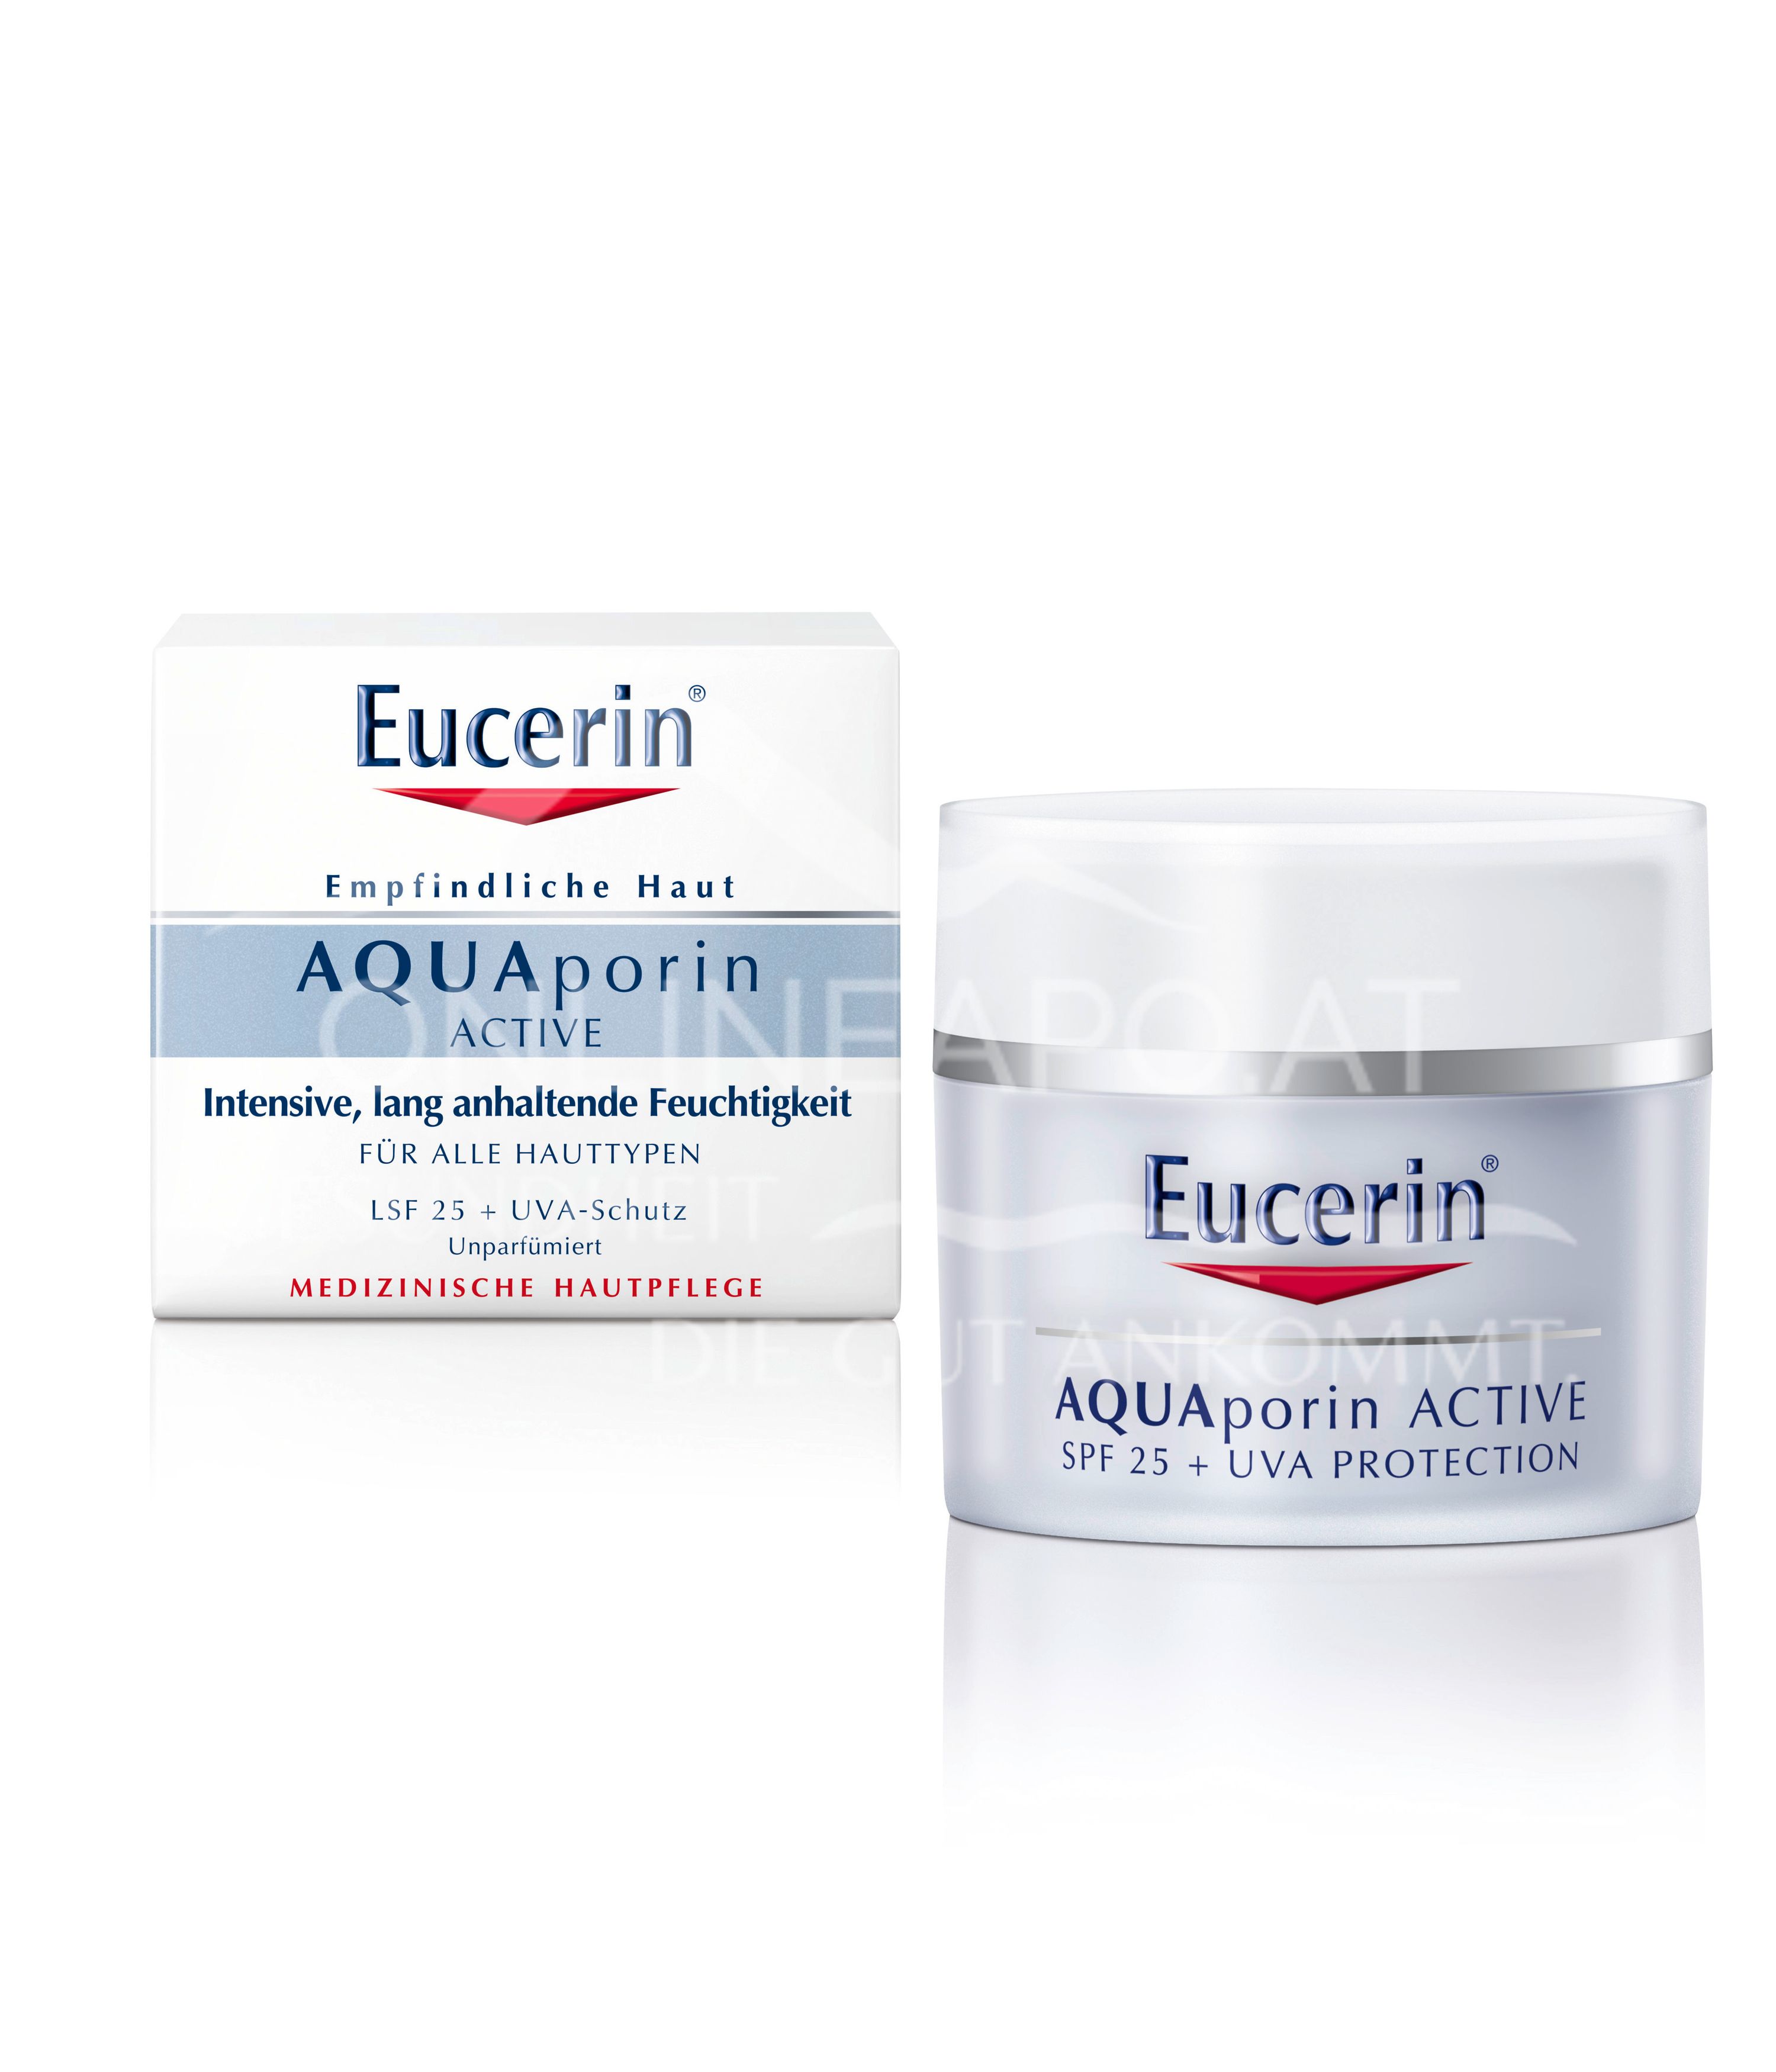 Eucerin® AQUAporin ACTIVE Feuchtigkeitspflege mit LSF 25+ UVA-Schutz